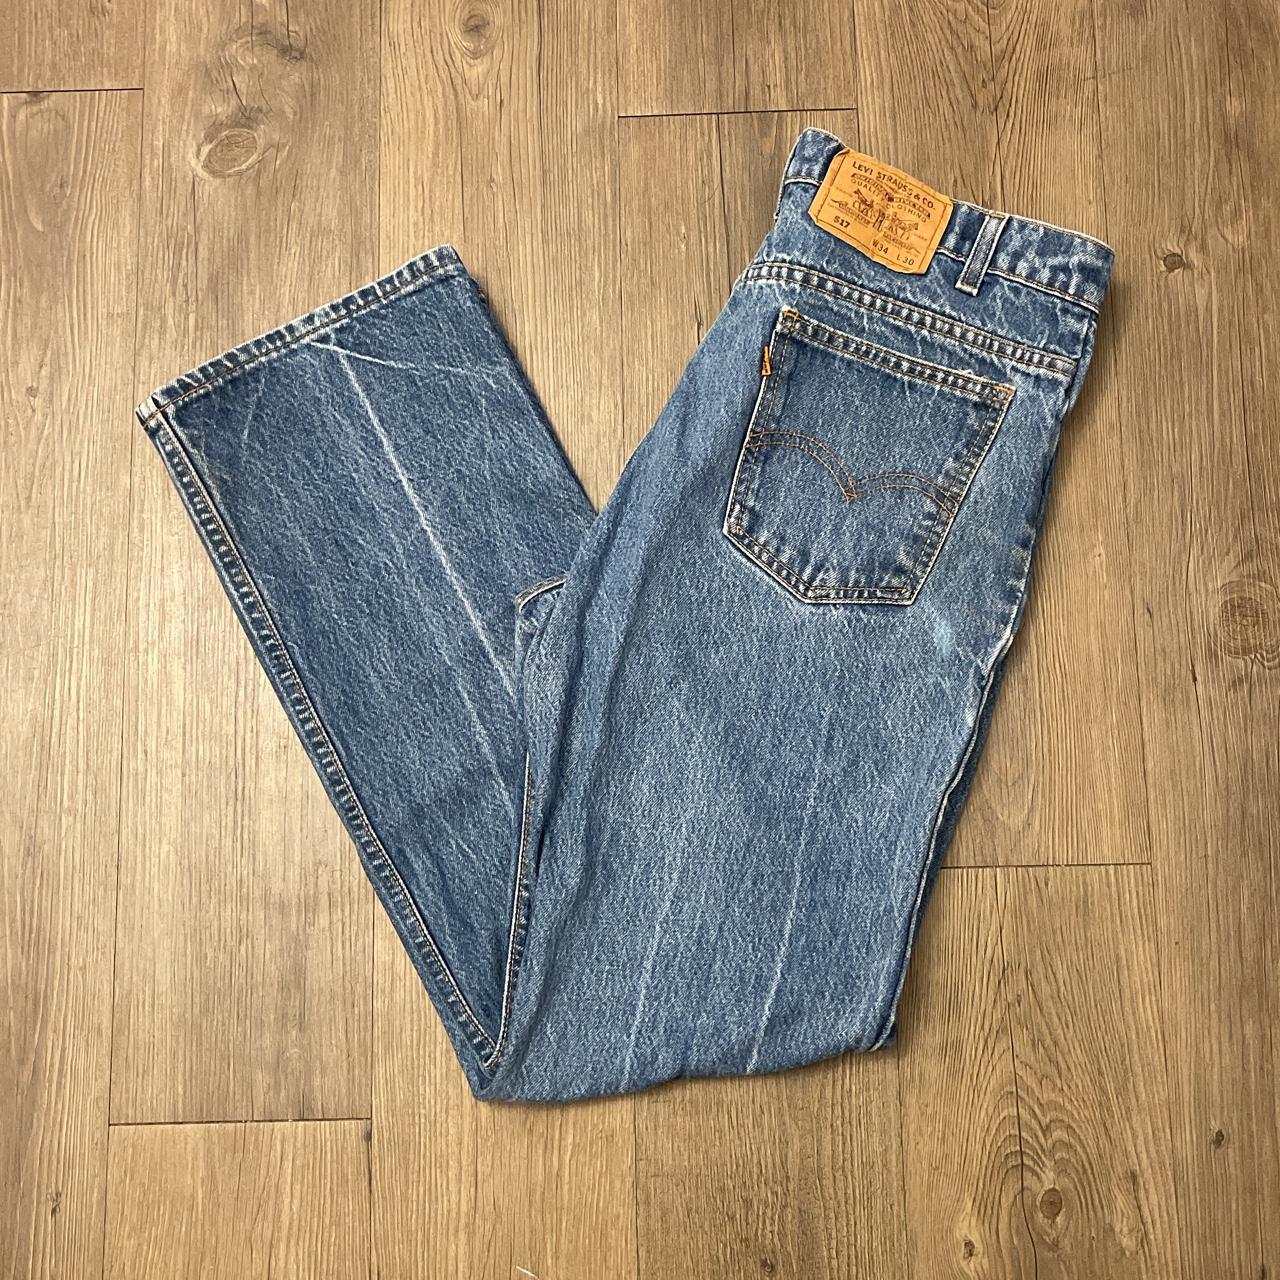 Vintage Levis 517 Orange Tab Blue Denim Jeans Size... - Depop